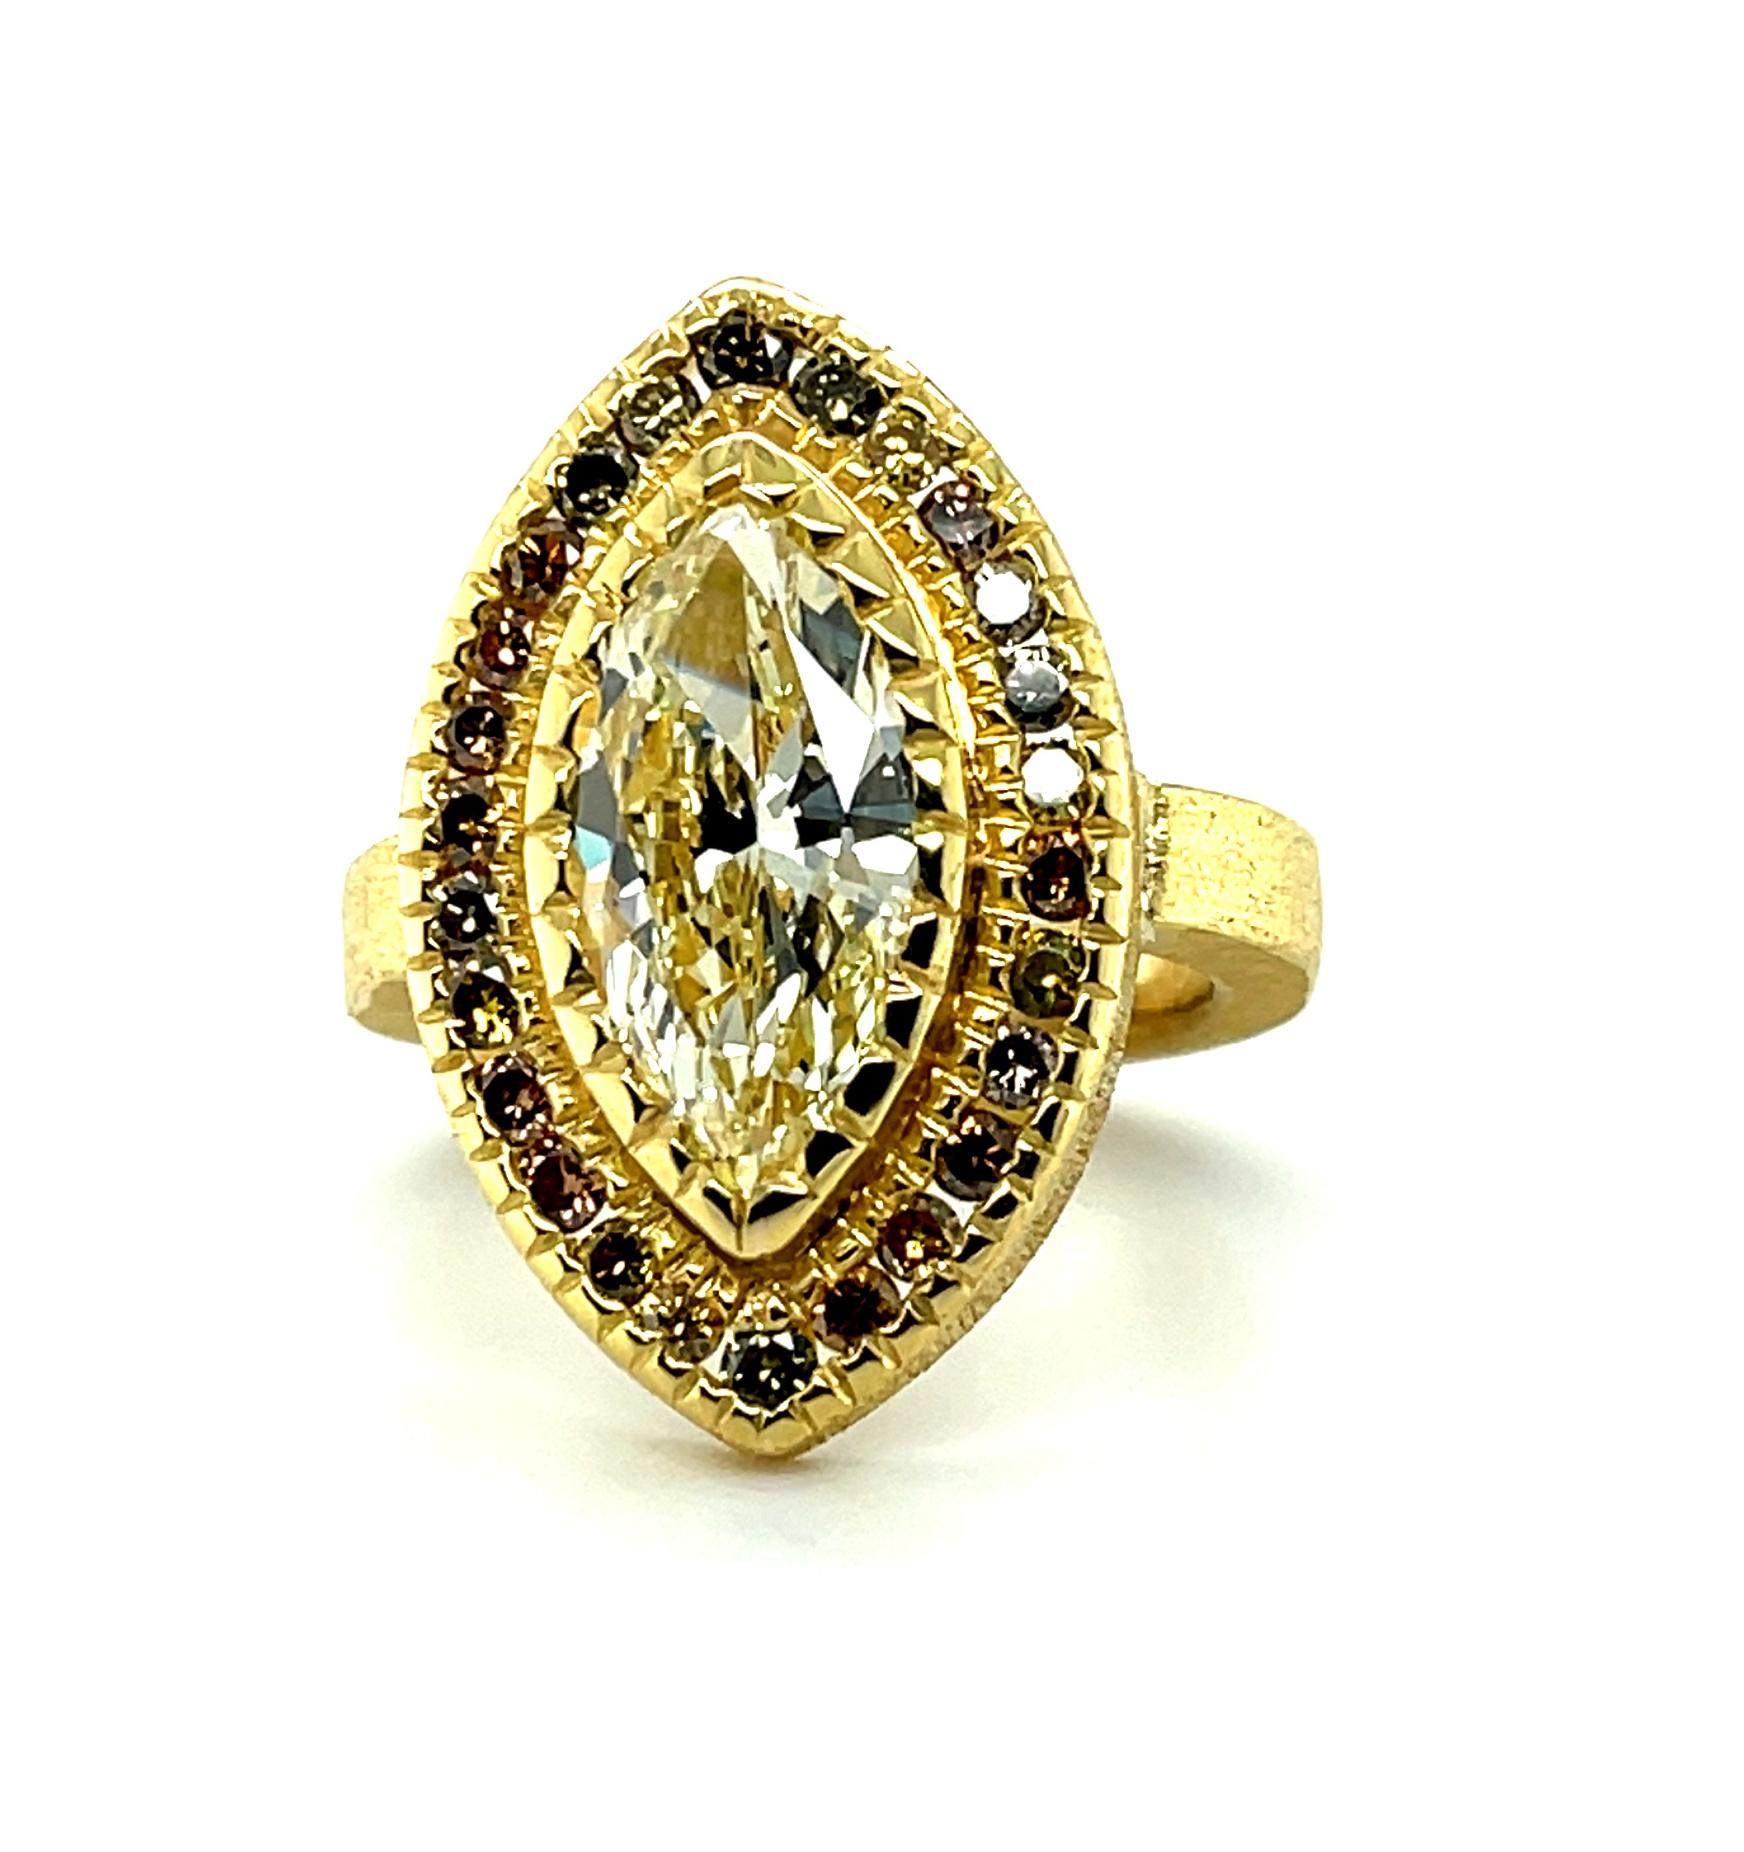 Dieser exquisit handgefertigte Ring aus 22 Karat Gelbgold enthält einen wunderschönen marquiseförmigen hellgelben Diamanten mit einem Gewicht von 3,54 Karat! Es handelt sich um einen beeindruckenden Edelstein mit VS-1-Klarheit und außergewöhnlicher